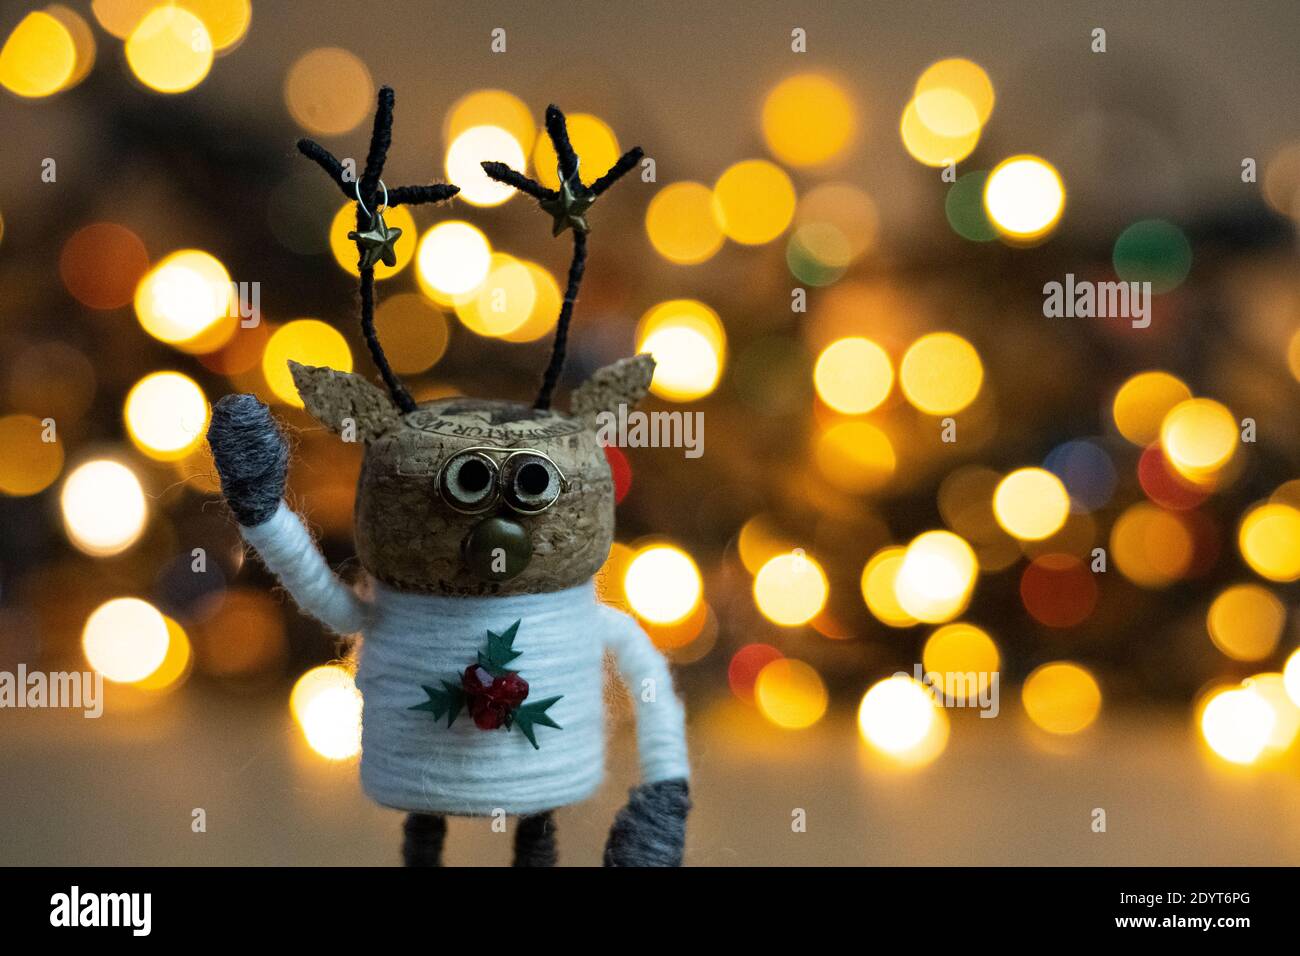 Kreatives Weihnachtskonzept, warmer, einladender, farbenfroher Bokeh-Hintergrund mit einer winkenden recycelten Korkdeko aus Champagner-Kork Stockfoto